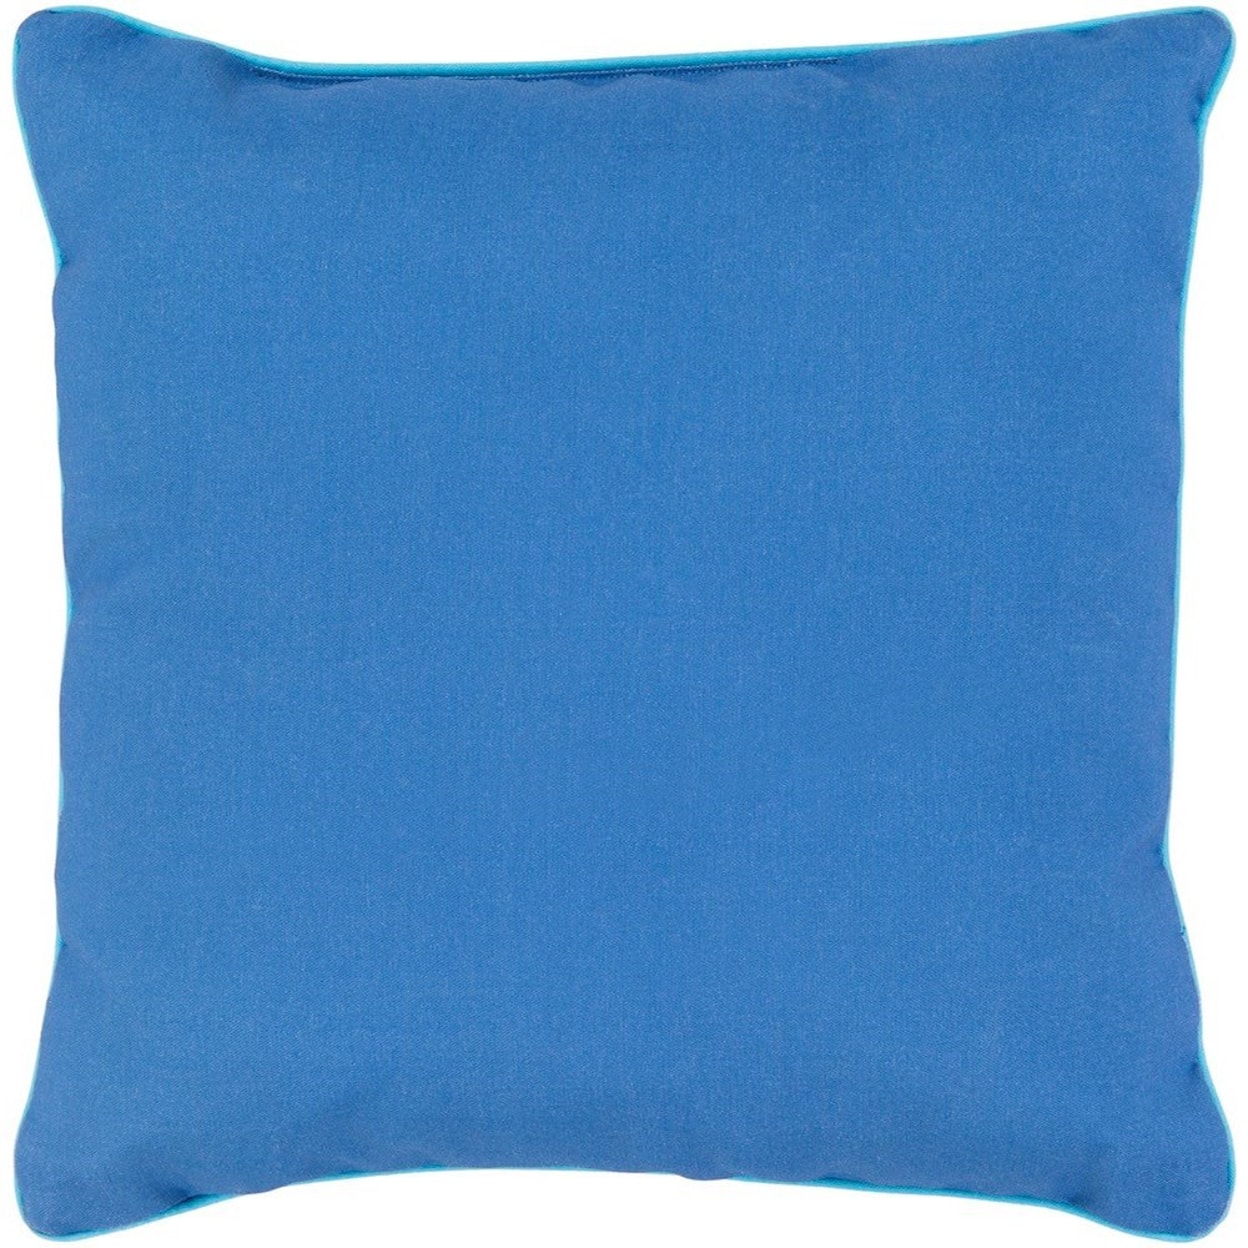 Surya Bahari 16 x 16 x 4 Polyester Throw Pillow